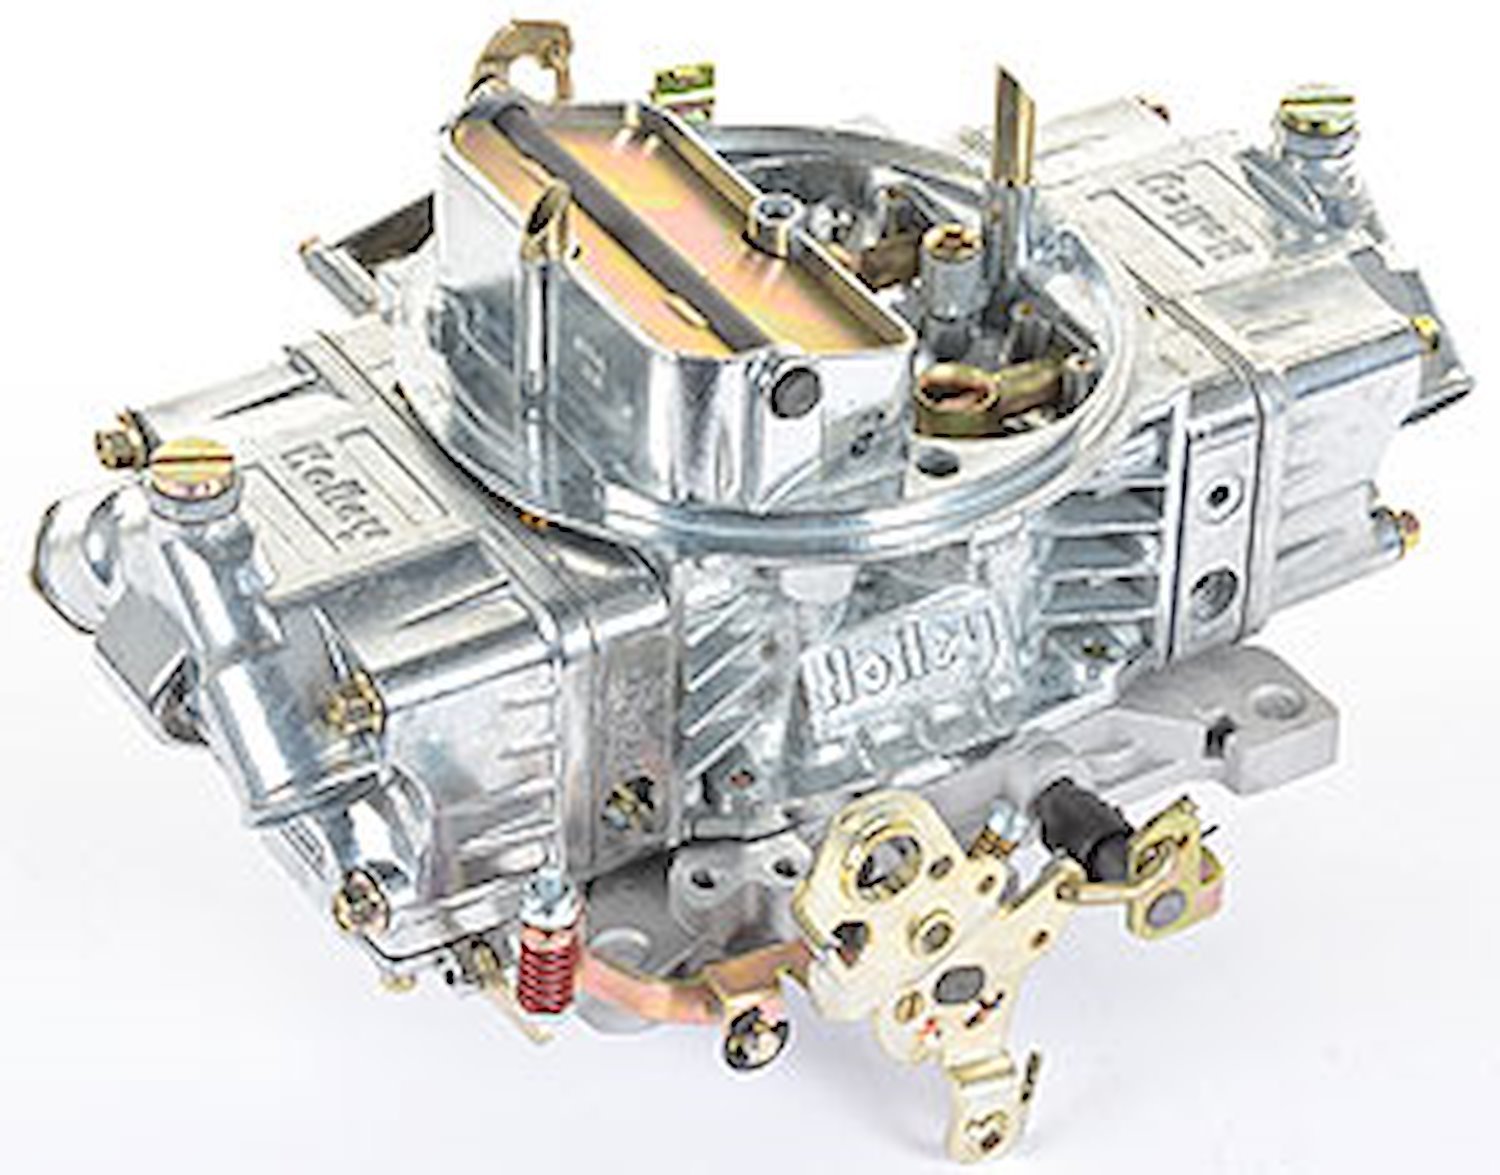 0-4777S Zinc-Coated Double Pumper Carburetor 650 cfm